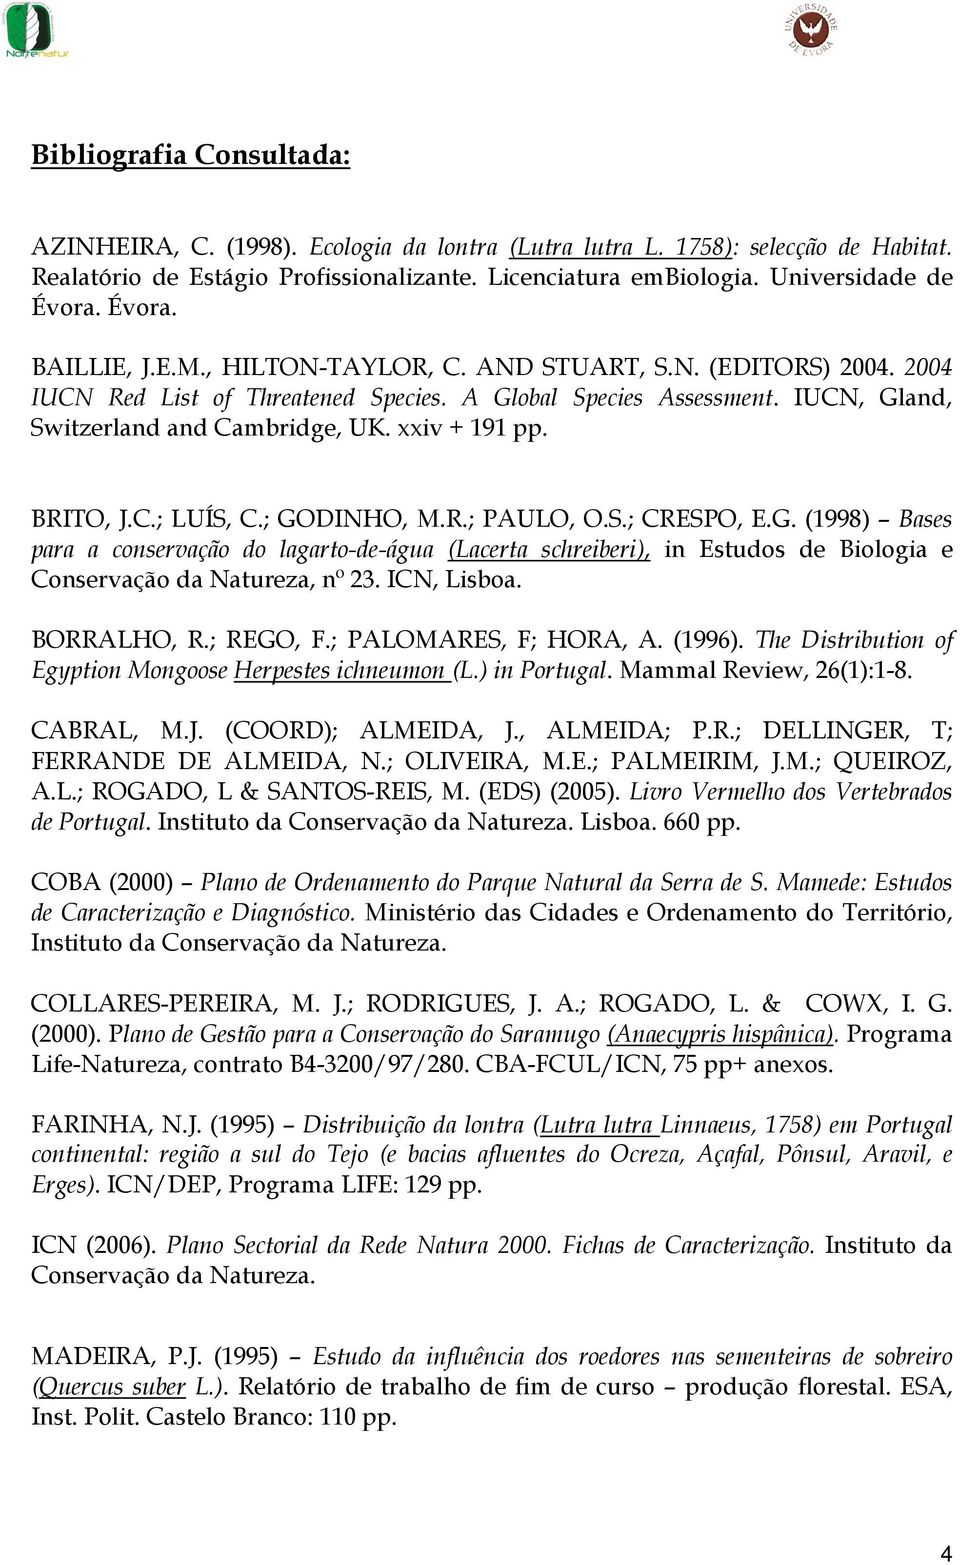 xxiv + 191 pp. BRITO, J.C.; LUÍS, C.; GODINHO, M.R.; PAULO, O.S.; CRESPO, E.G. (1998) Bases para a conservação do lagarto-de-água (Lacerta schreiberi), in Estudos de Biologia e Conservação da Natureza, nº 23.